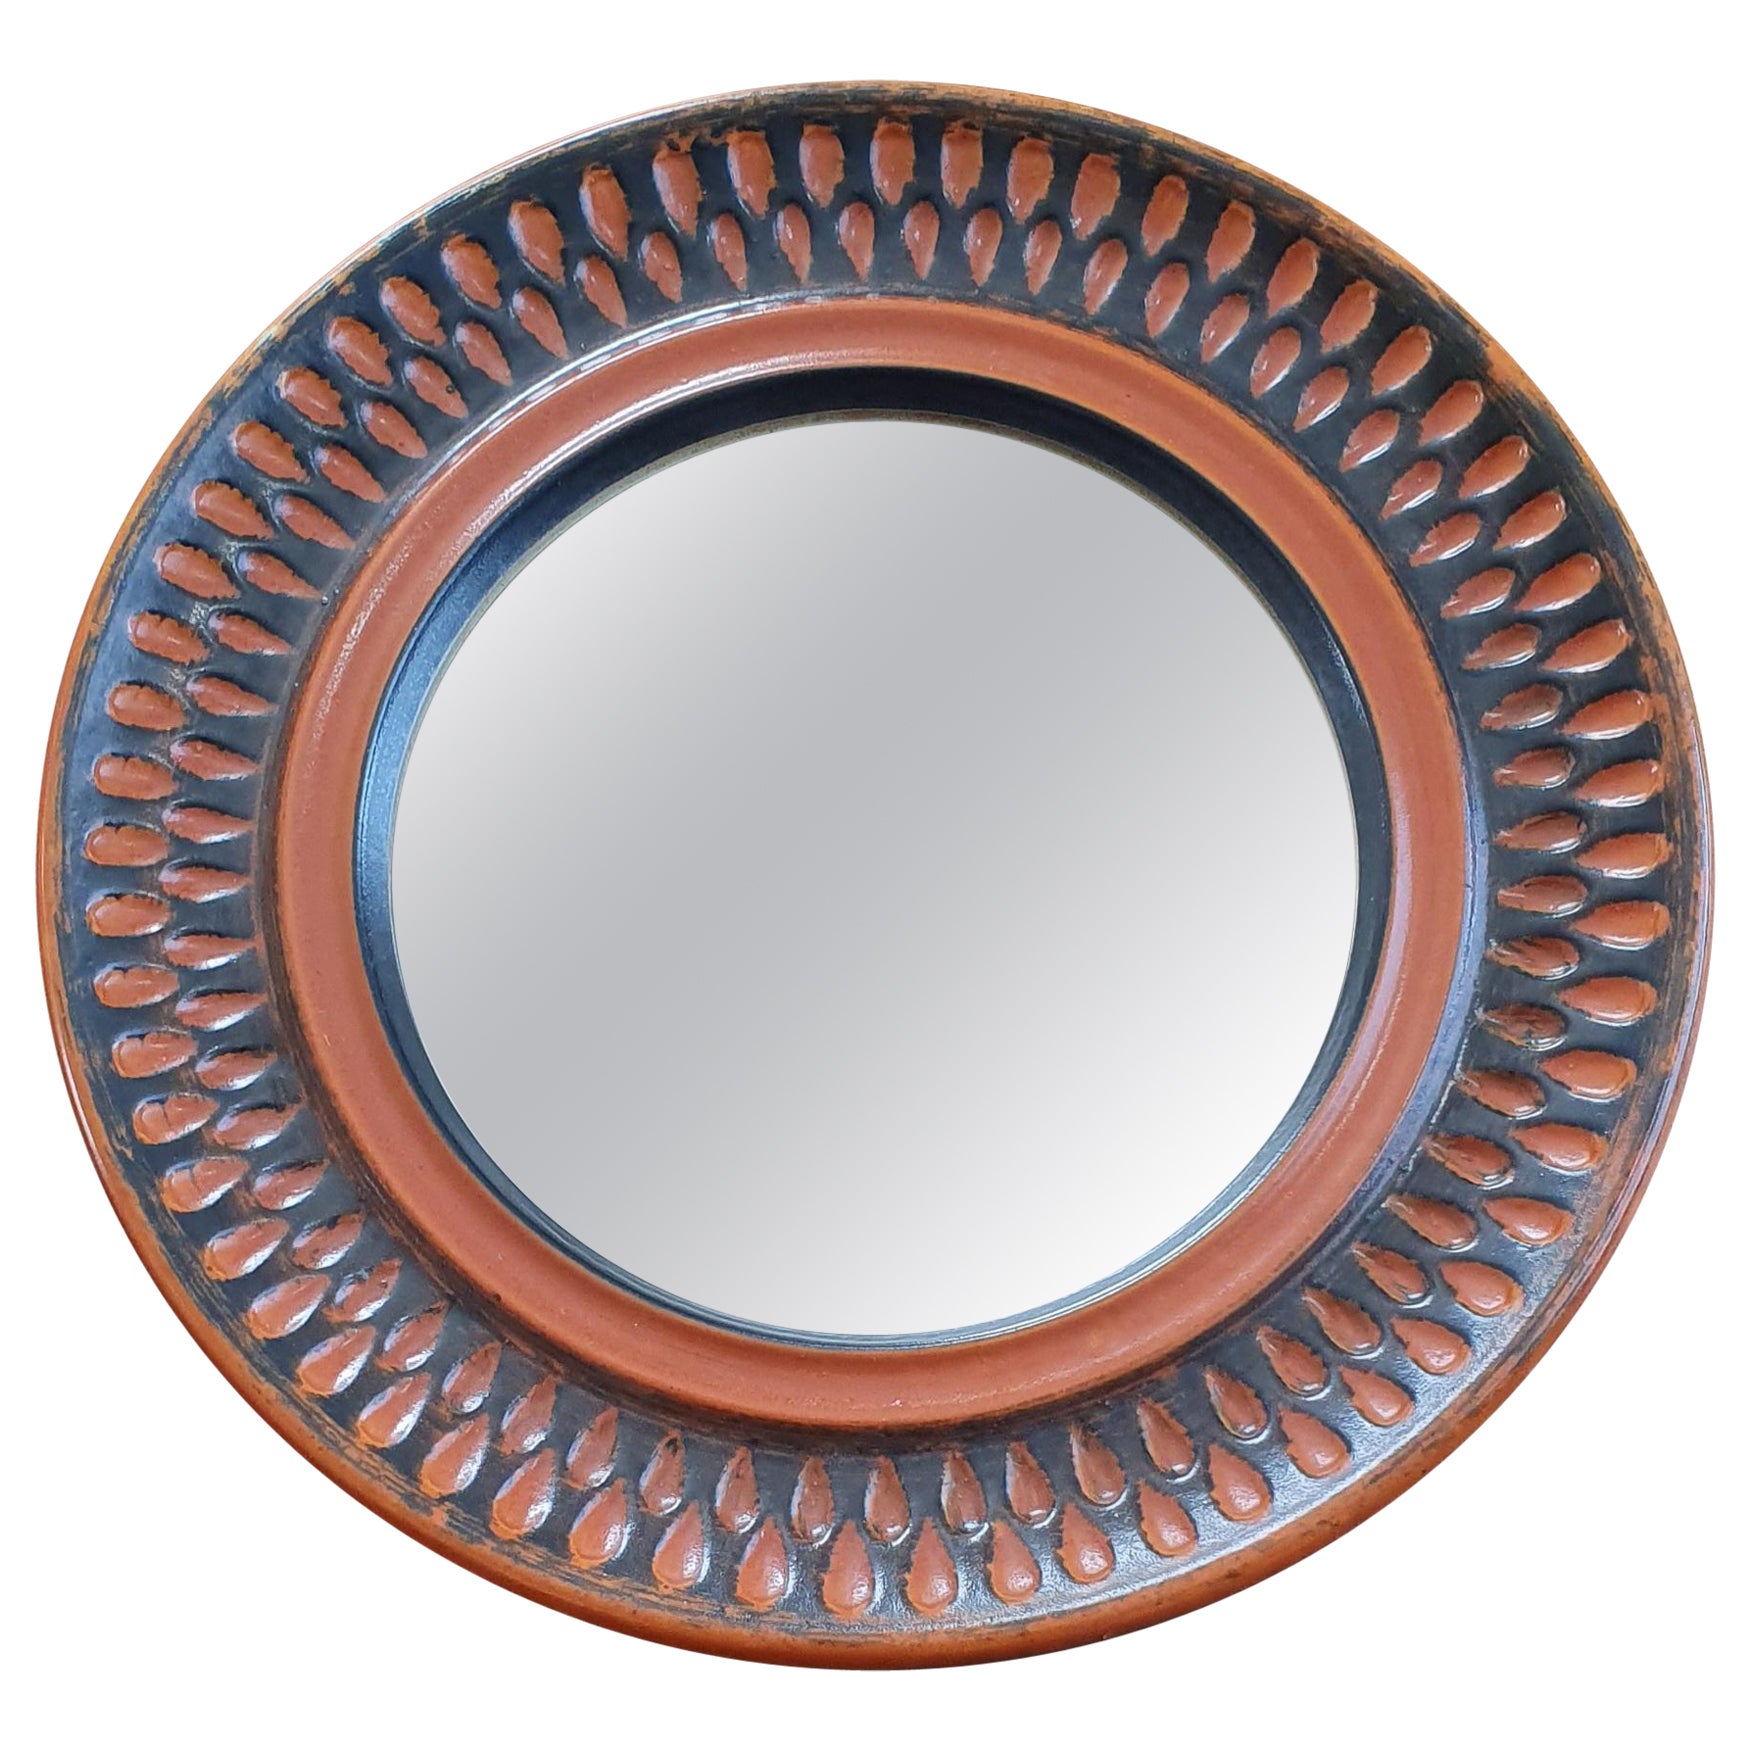 Round Midcentury Ceramic Mirror